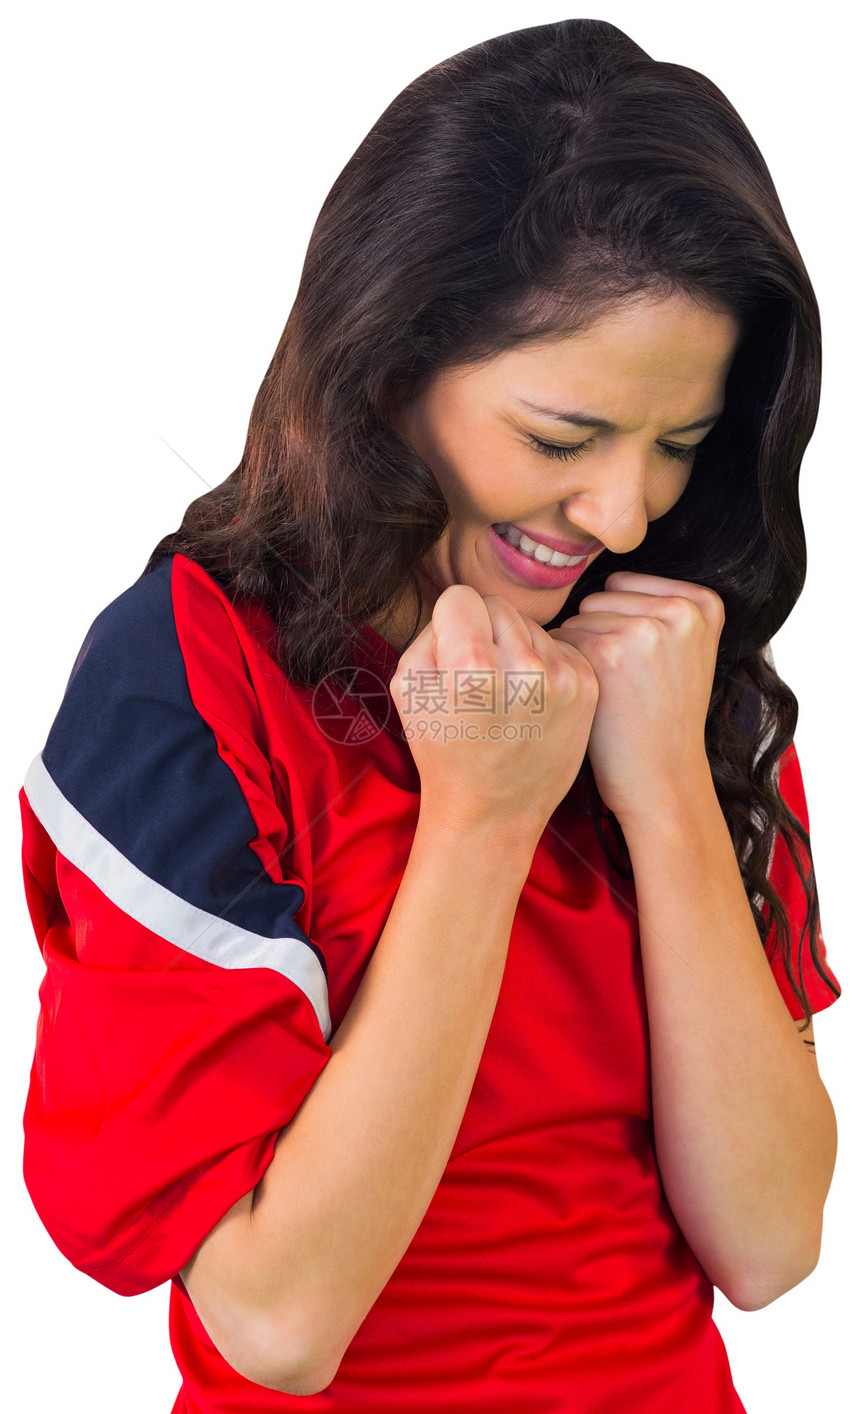 红红色的加油足球球迷杯子获奖活力欣快感胜利混血支持者欢呼快乐扇子图片